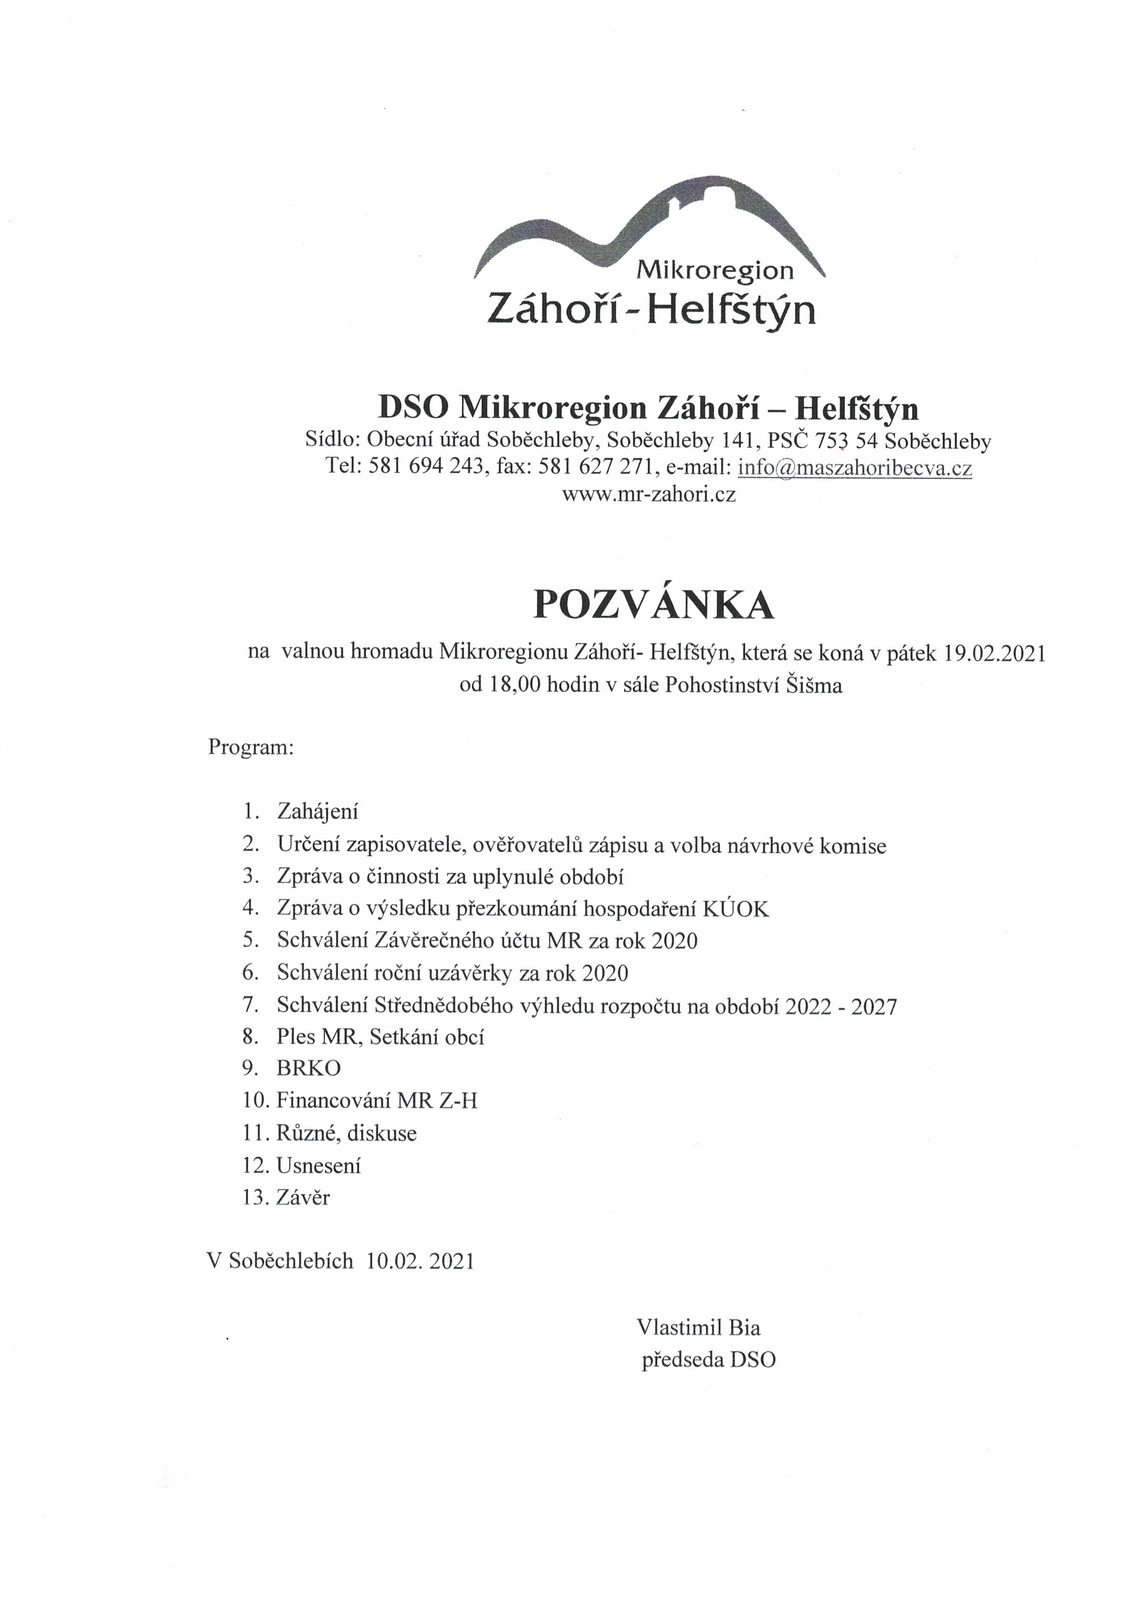 Pozvánka na valnou hromadu Mikroregionu Záhoří - Helfštýn.jpg